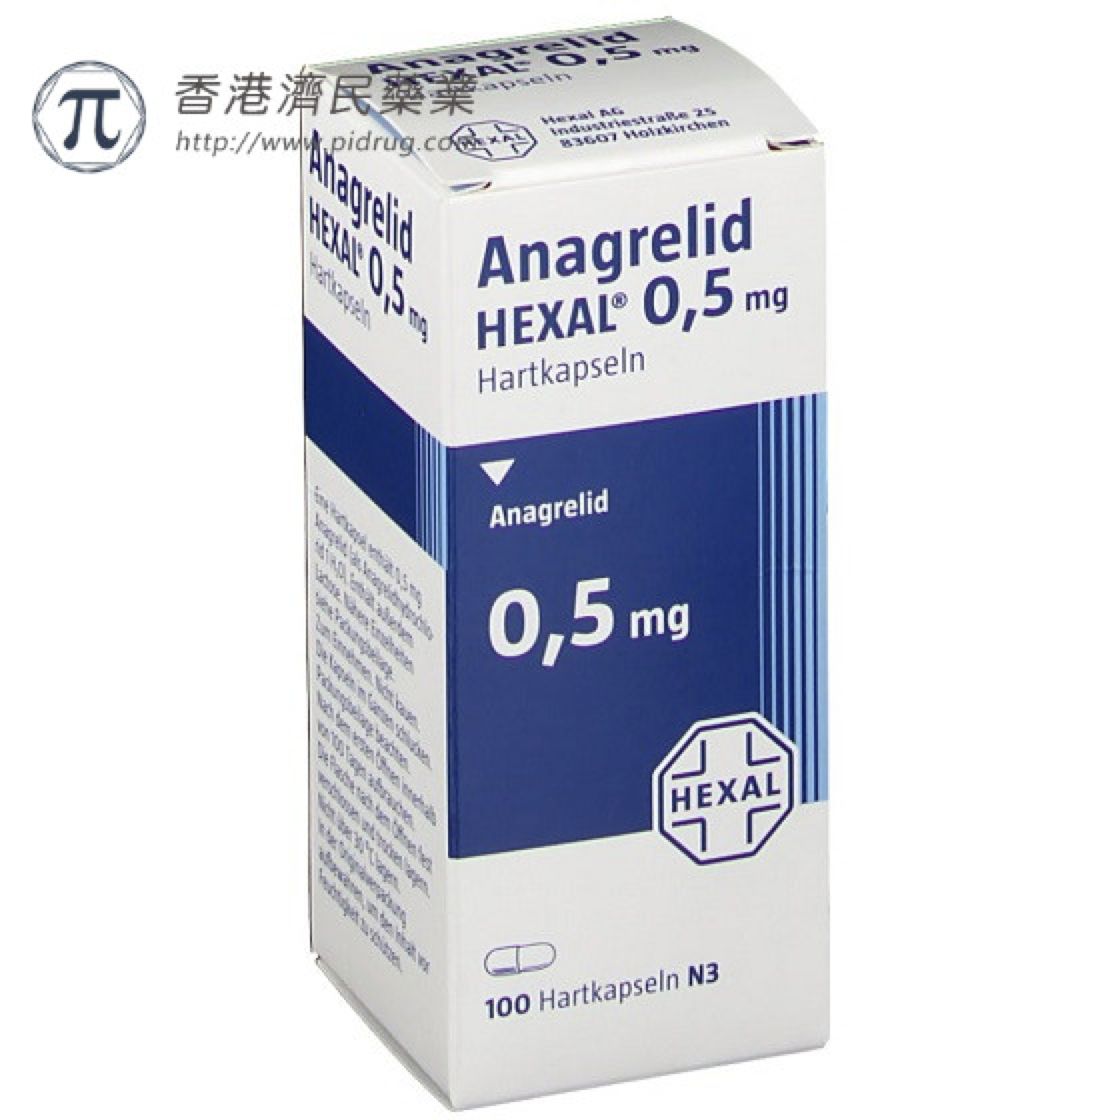 Anagrelid（阿那格雷）相关用法用量、不良反应及禁忌